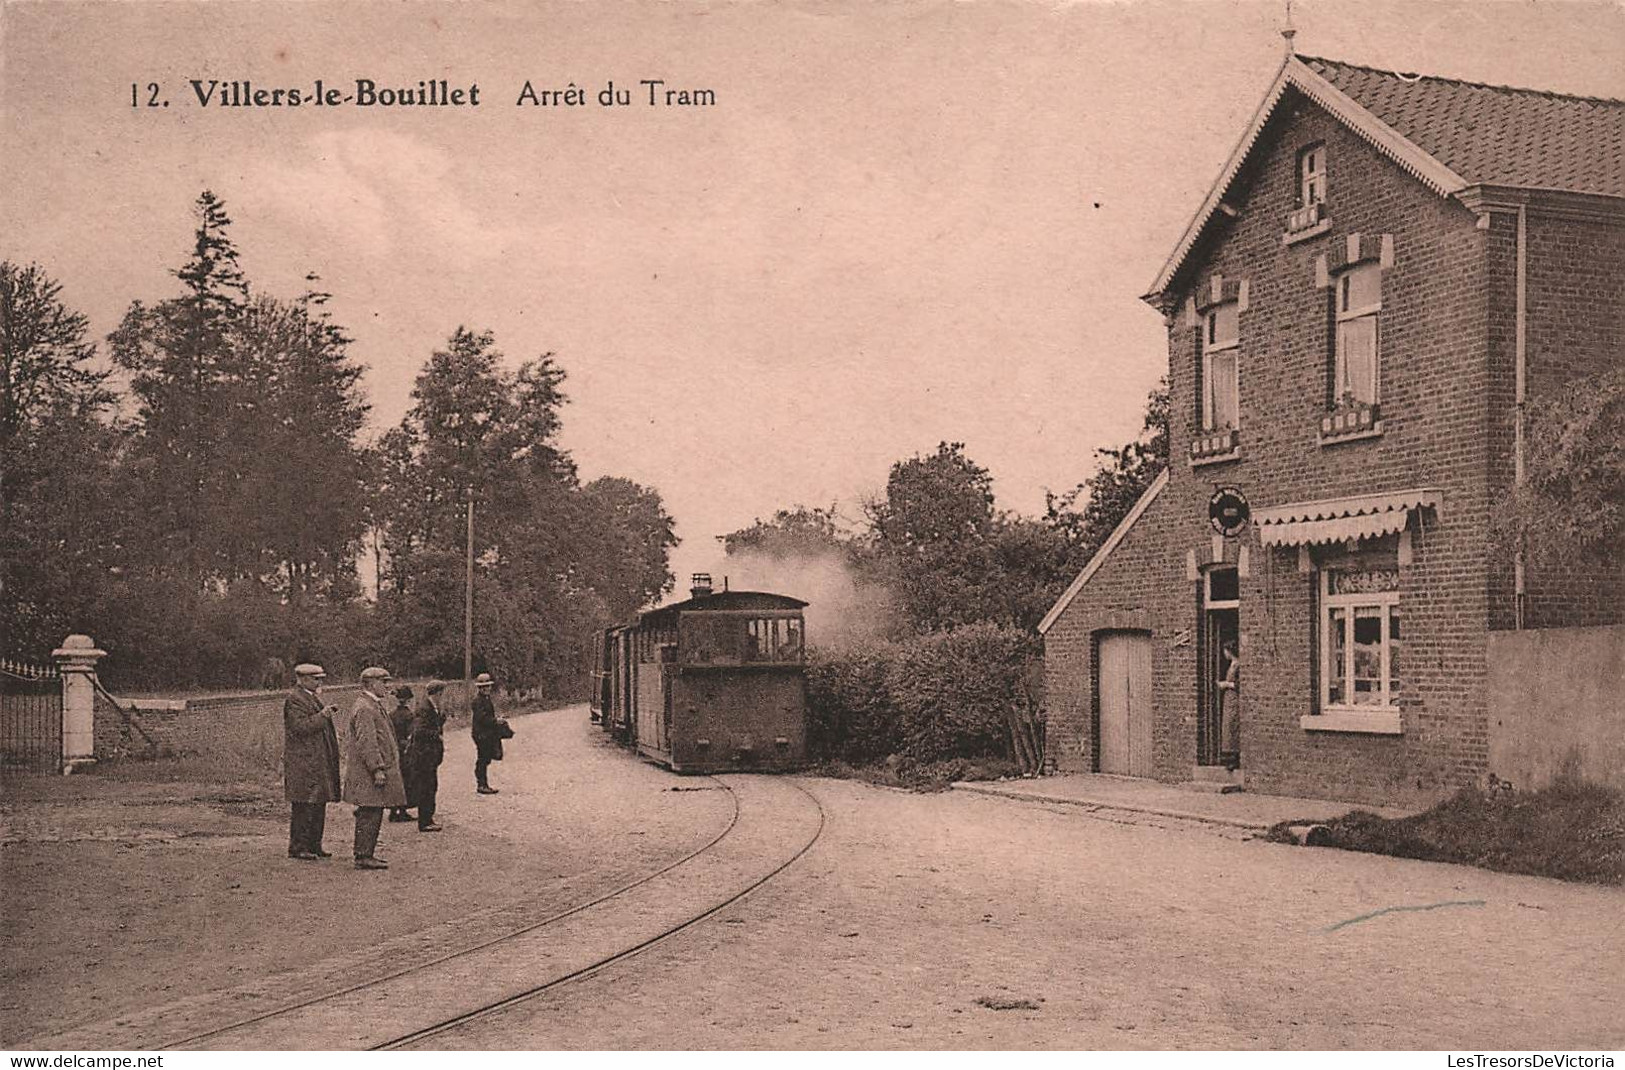 BELGIQUE - Villers Le Bouillet - Arret Du Tram - Tramway - Tram - Animé  - Carte Postale Ancienne - - Villers-le-Bouillet